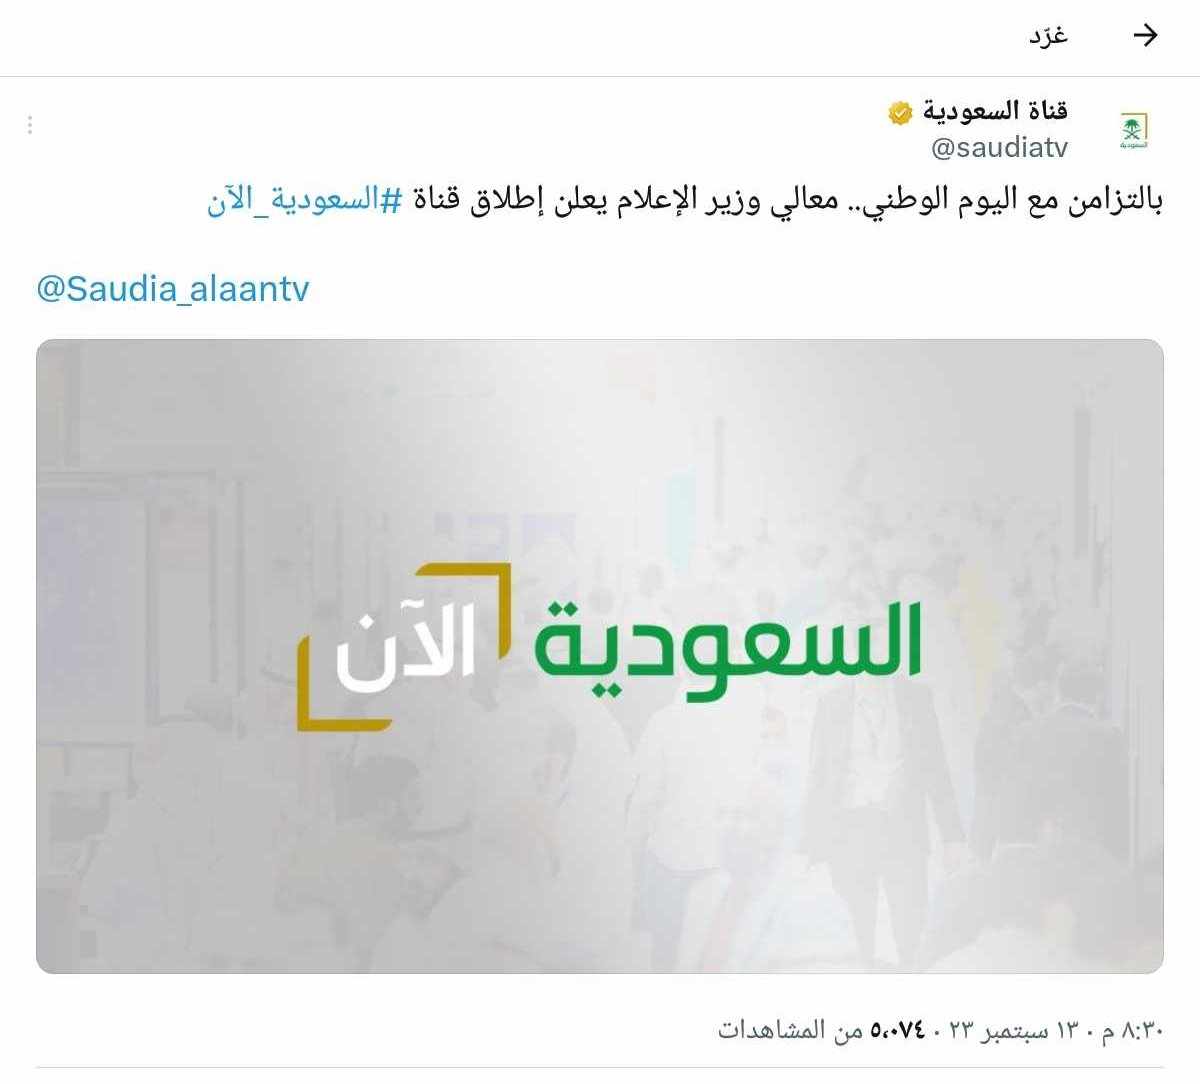 تزامنًا مع اليوم الوطني.. وزير الإعلام يُطلق قناة "السعودية الآن"